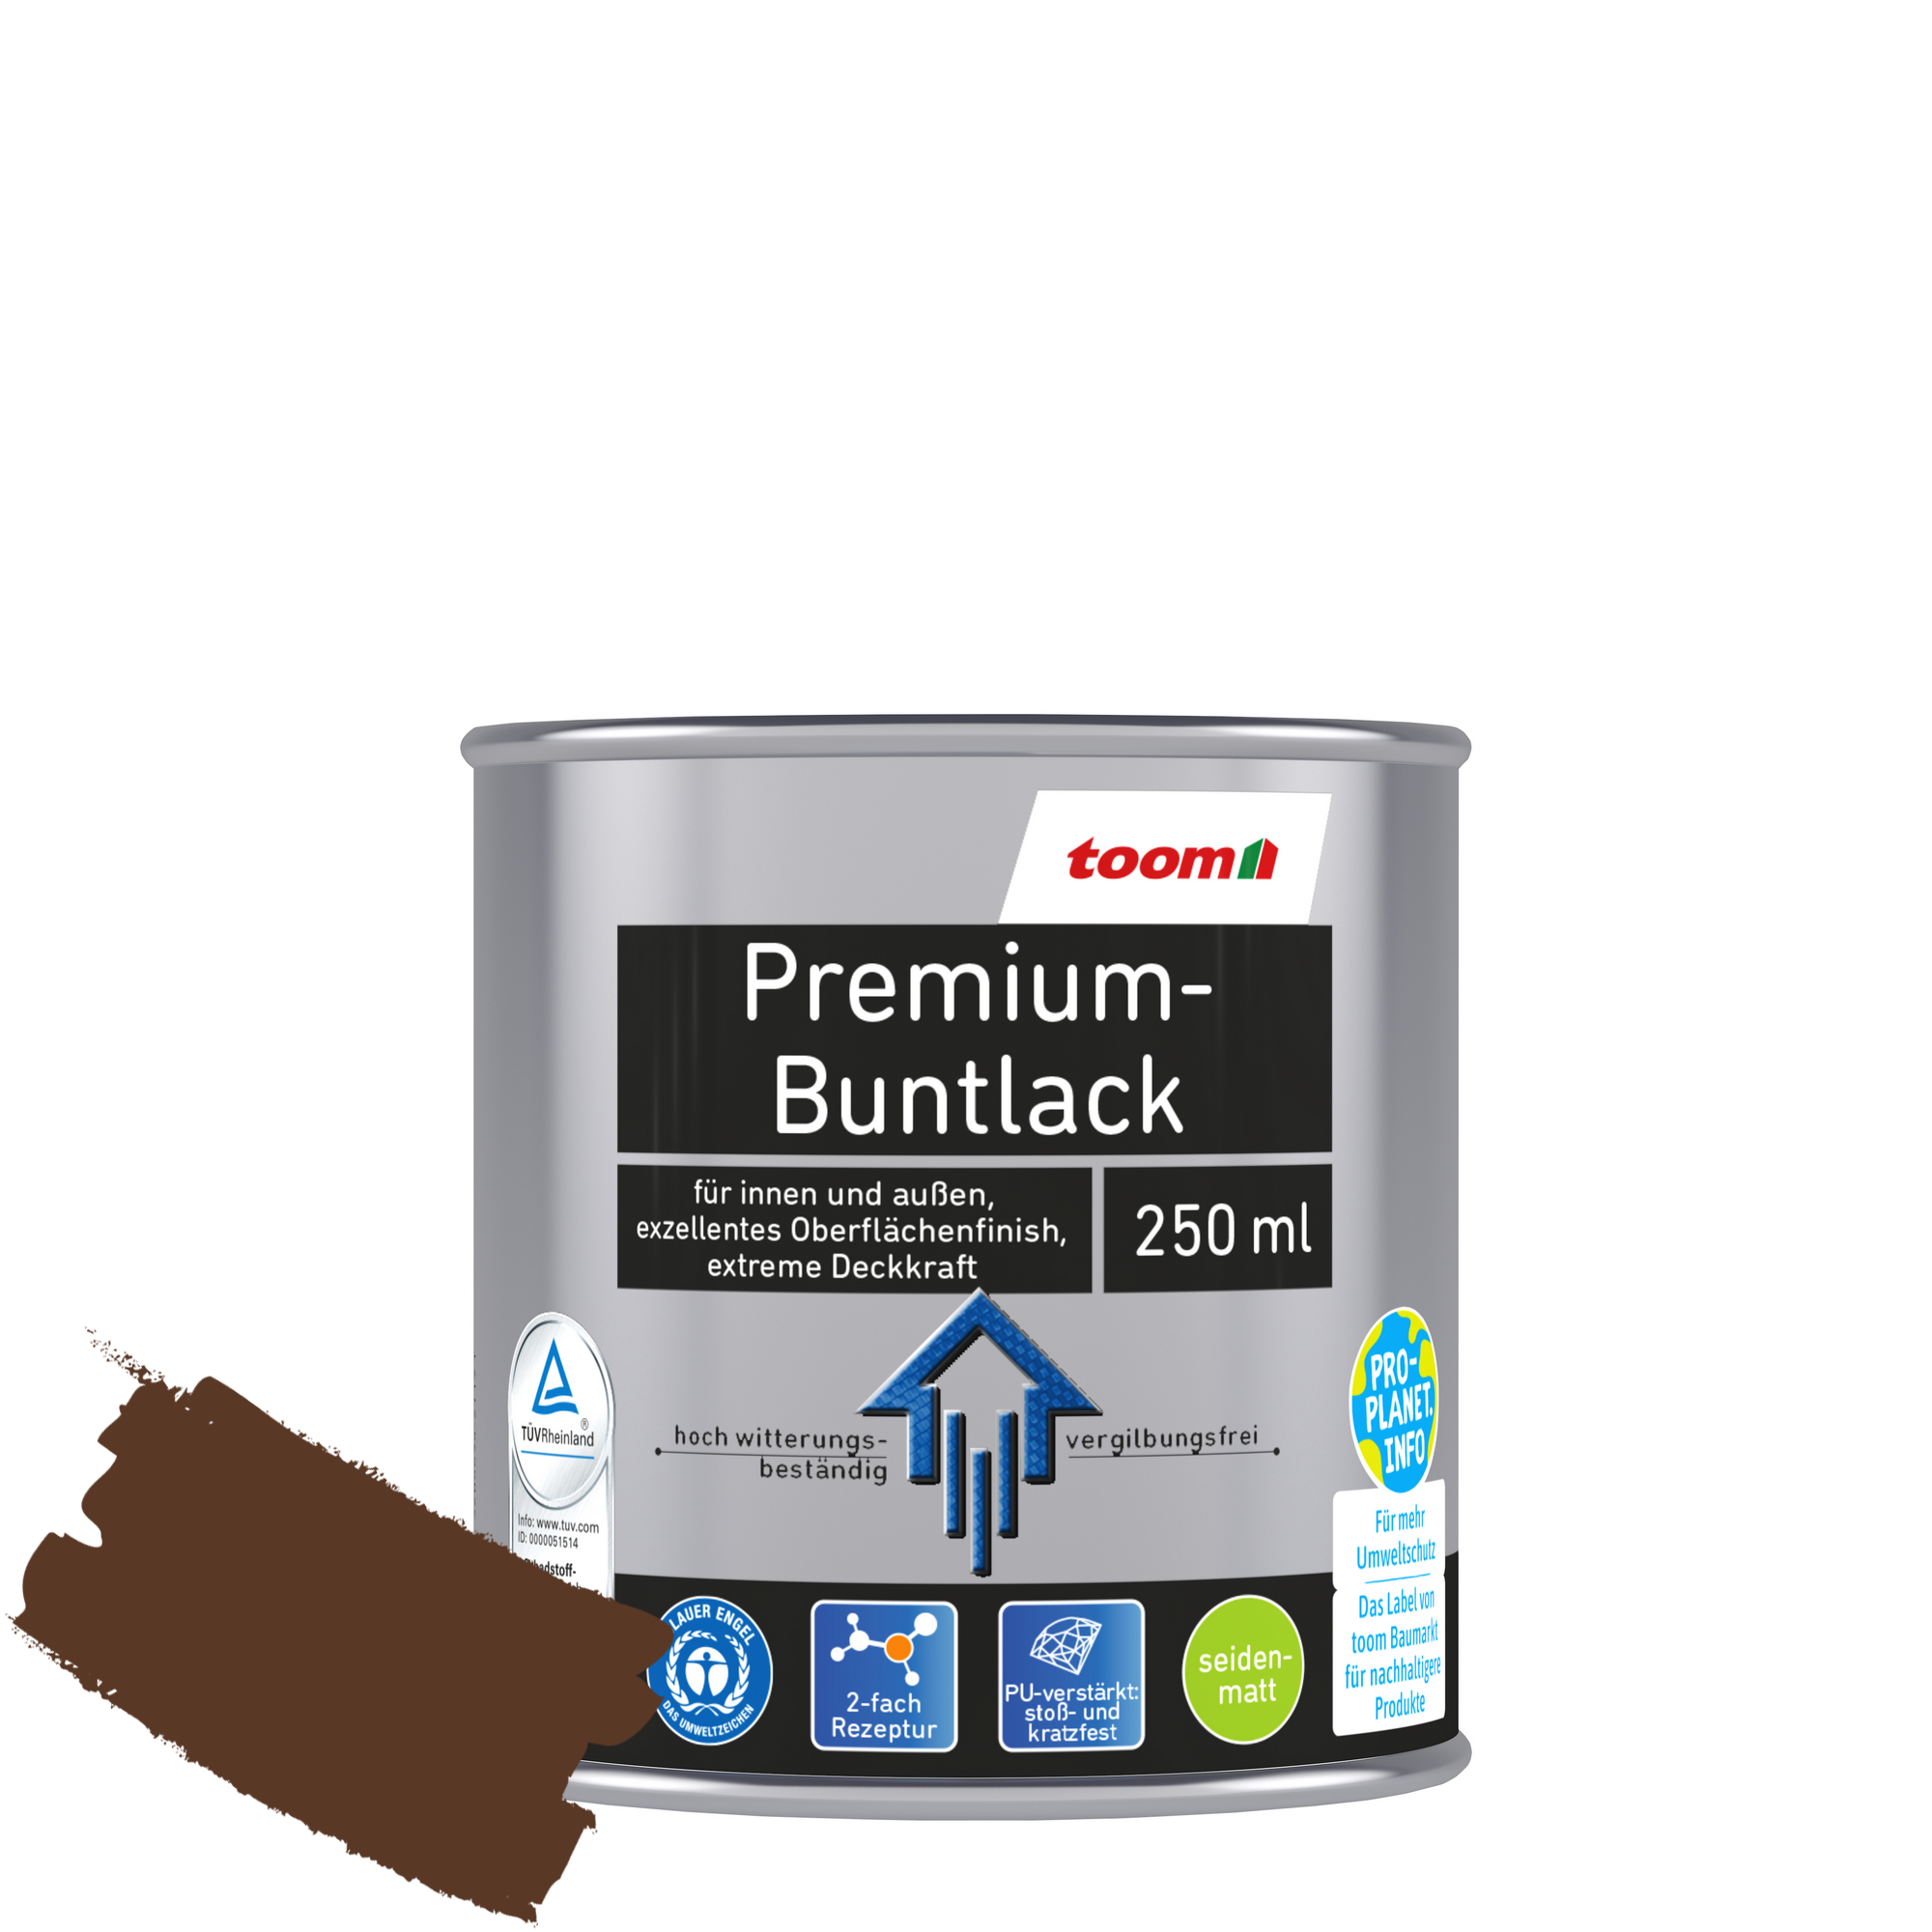 Premium-Buntlack nussbraun seidenmatt 250 ml + product picture